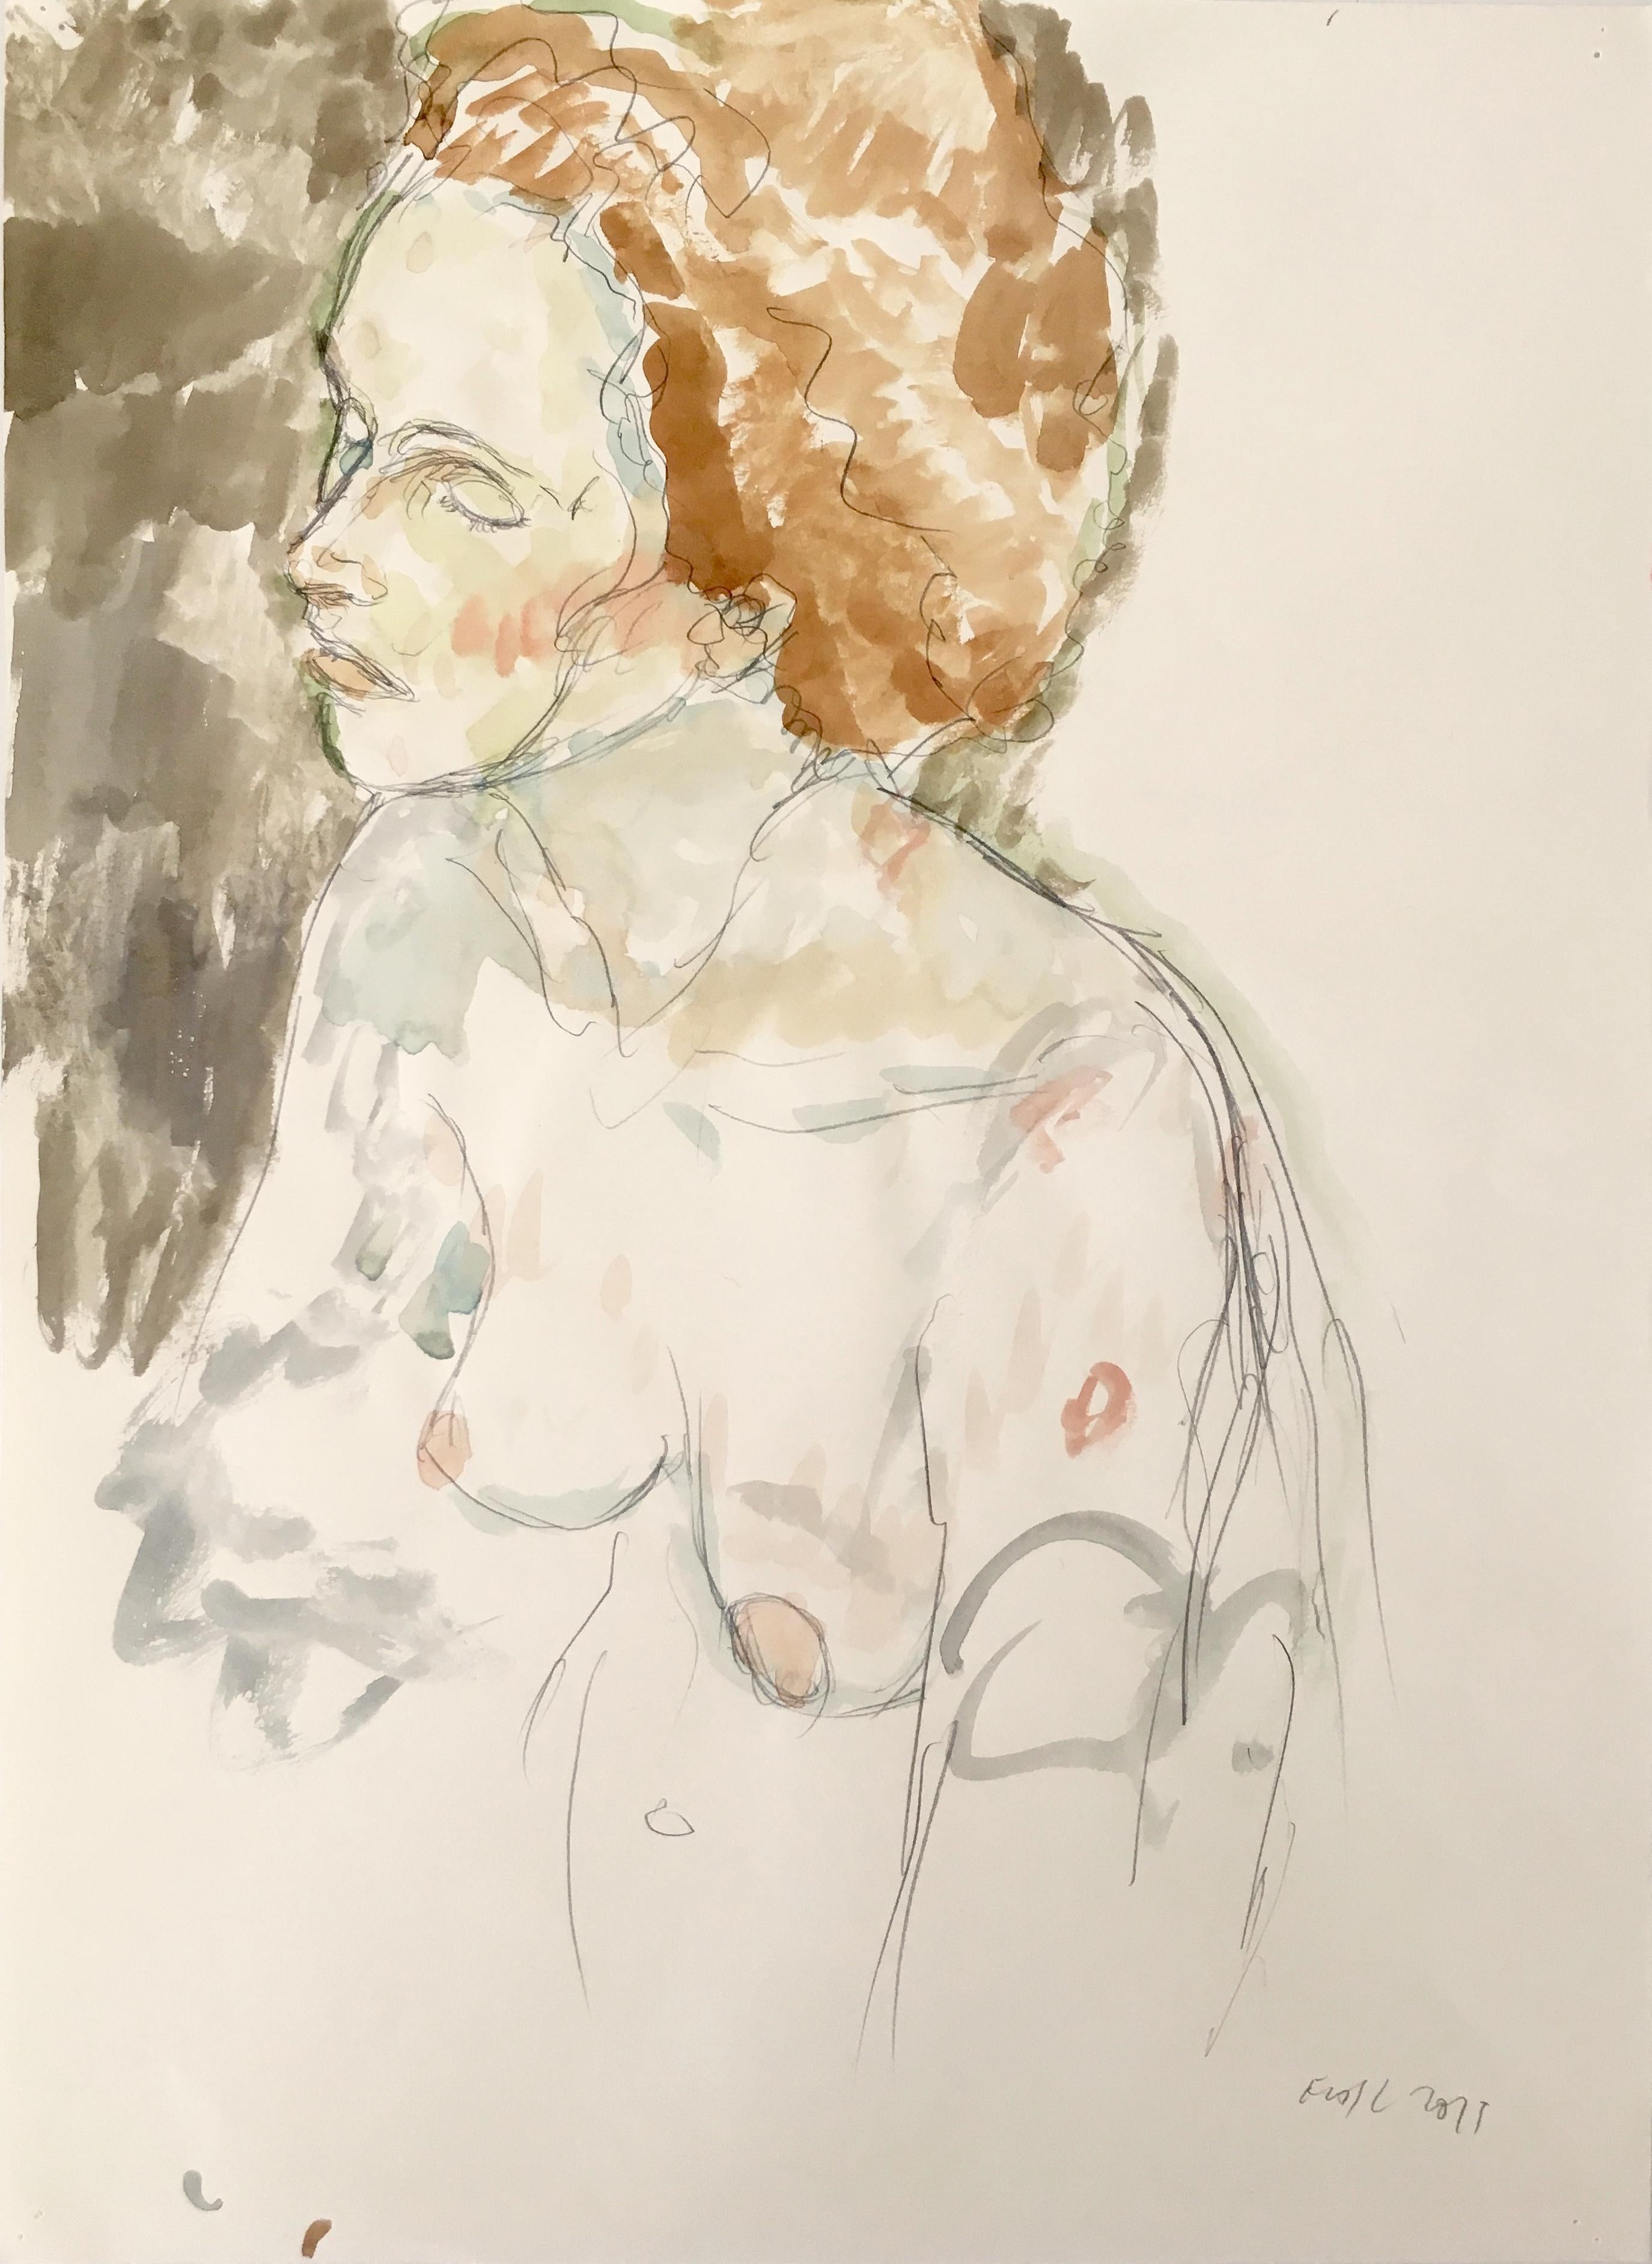 Torse de femme nue, aquarelle et graphite dans des tons terreux sourds